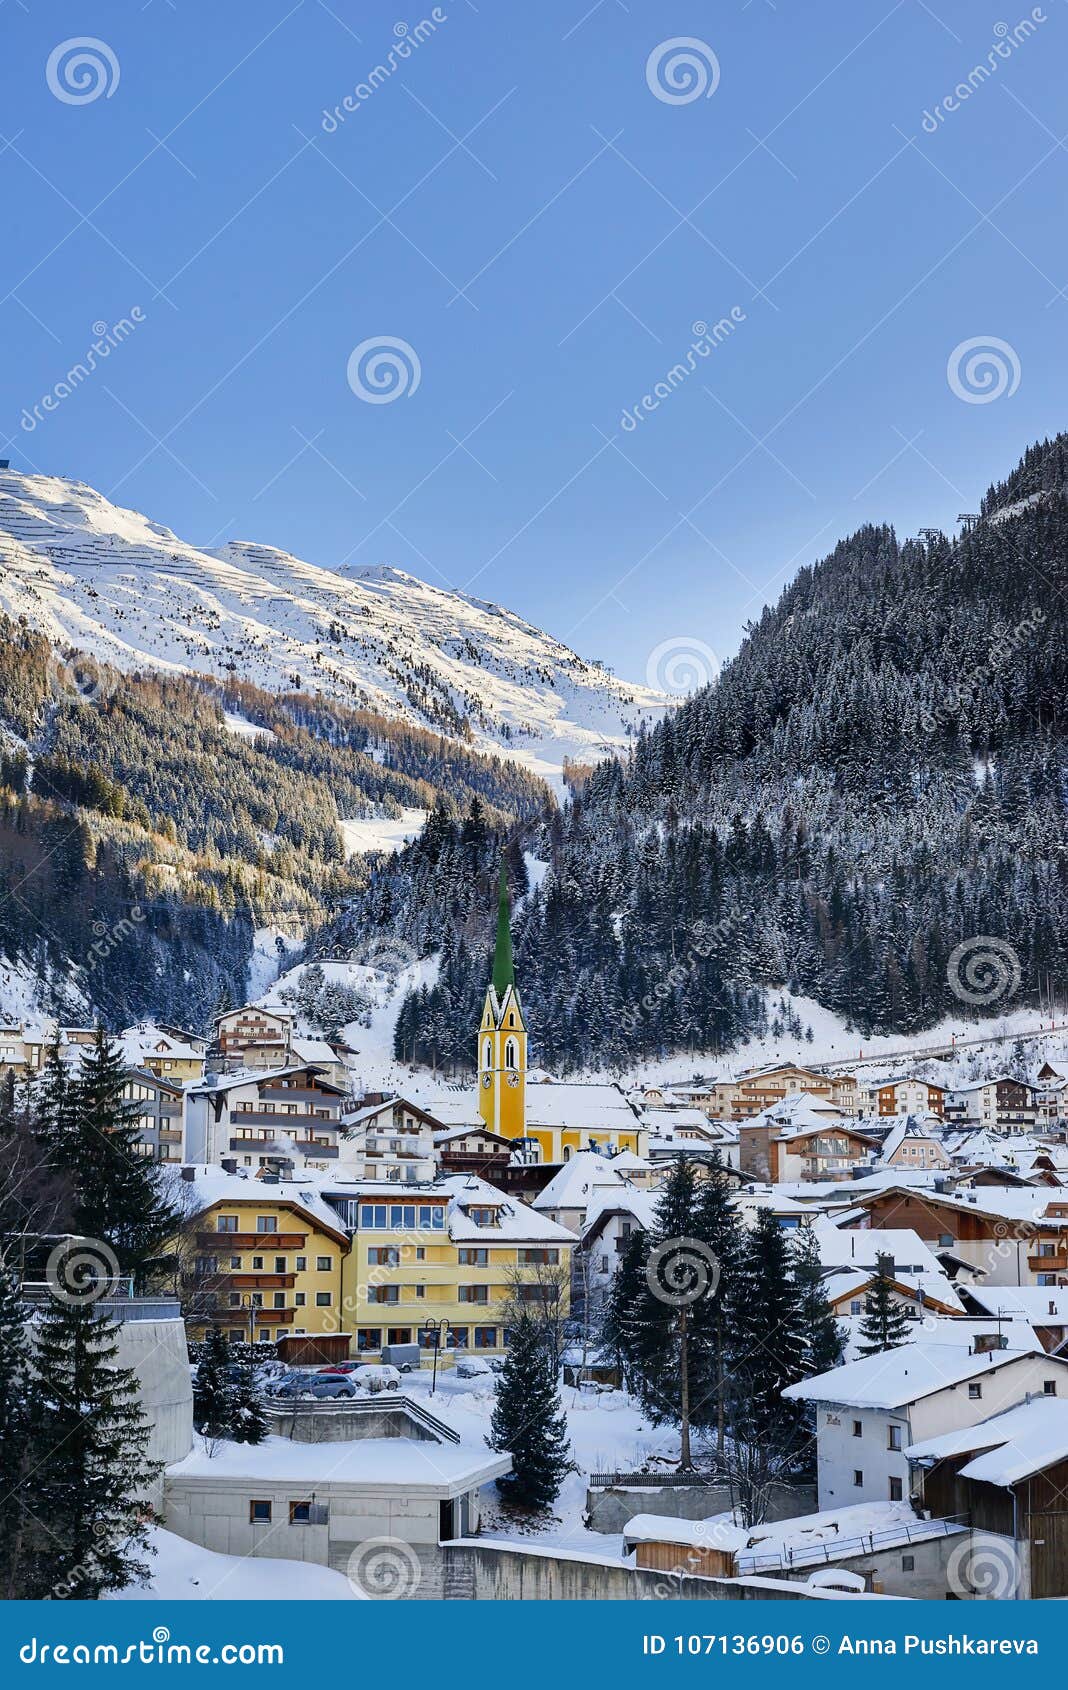 Winterabend Im Skiort Ischgl In Tirol Alpen Schnee Bedeckte Stadt Ist In Den Schatten Aber Berge Sind Sonnenbeschien Redaktionelles Foto Bild Von Winterabend Stadt